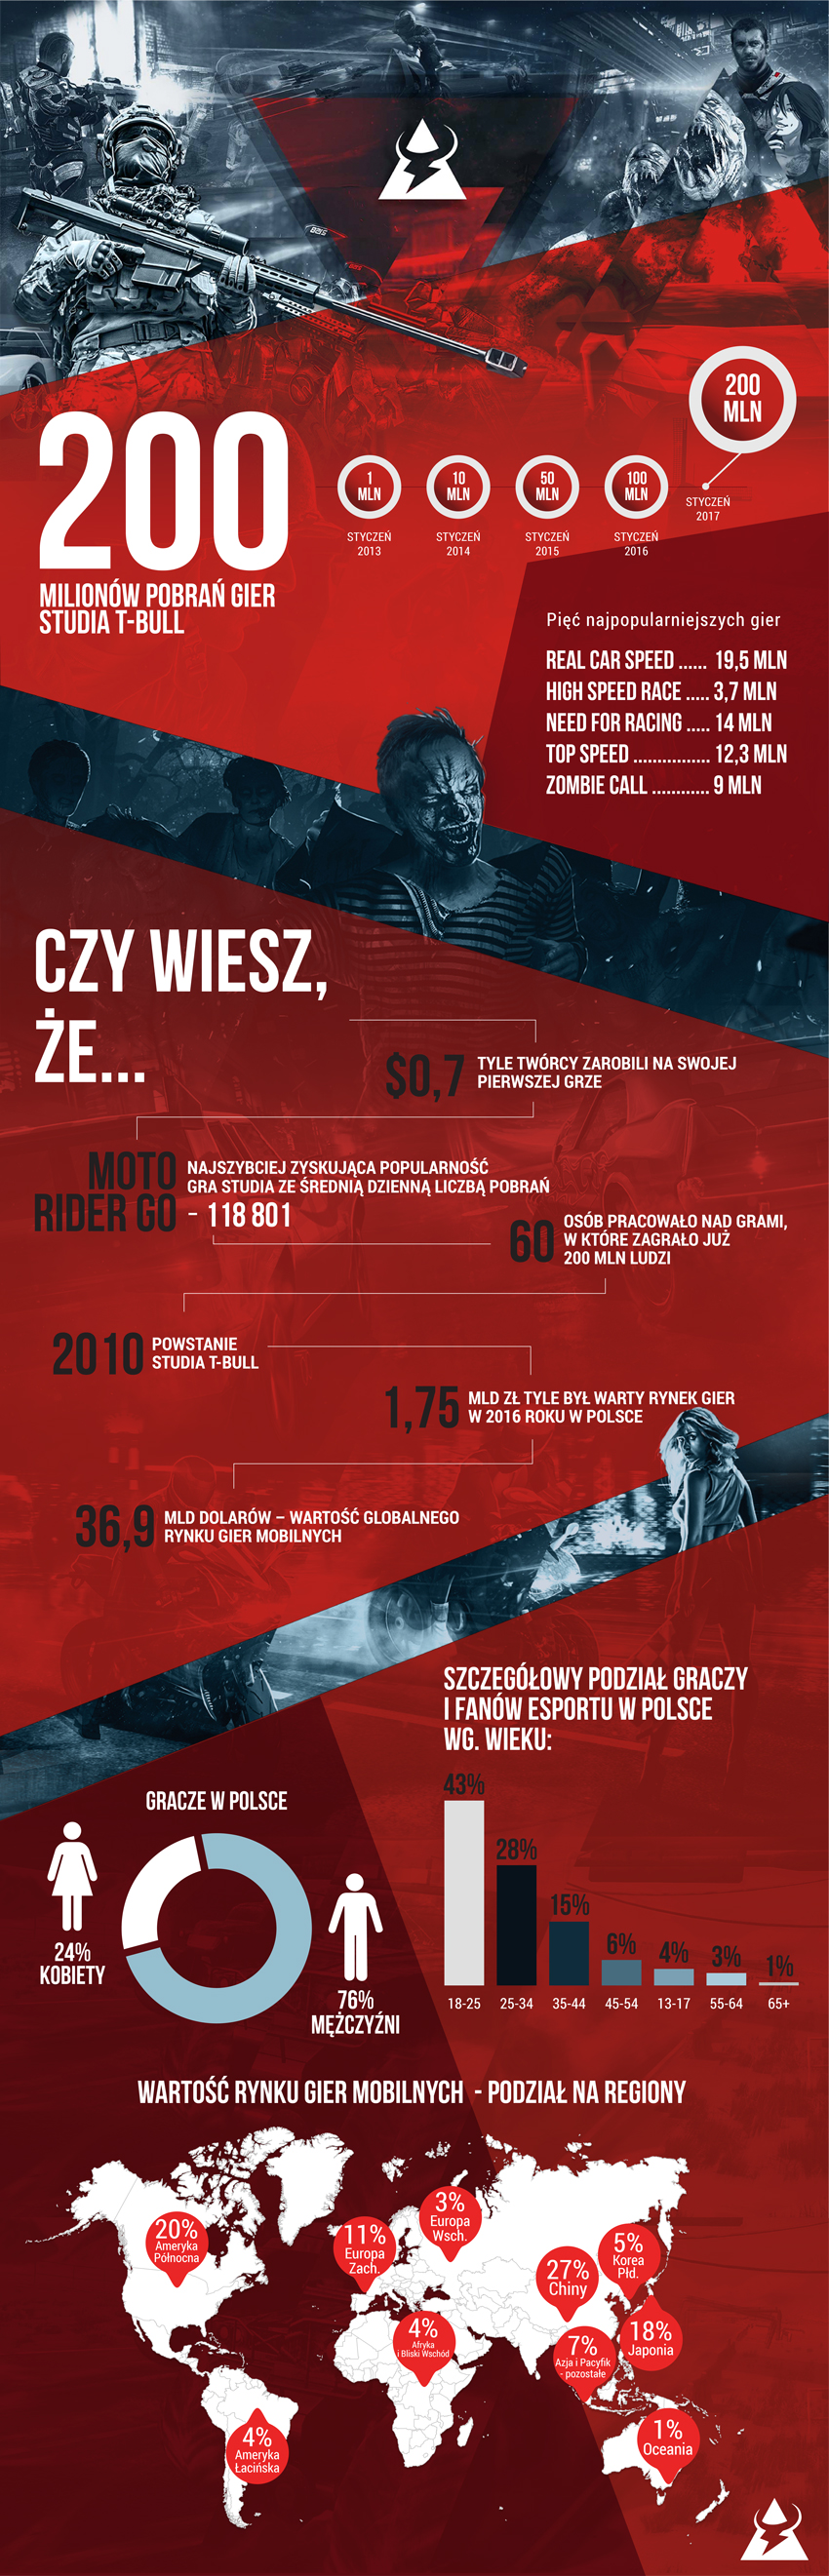 Gry wrocławskiego studia przebiły barierę 200 milionów pobrań